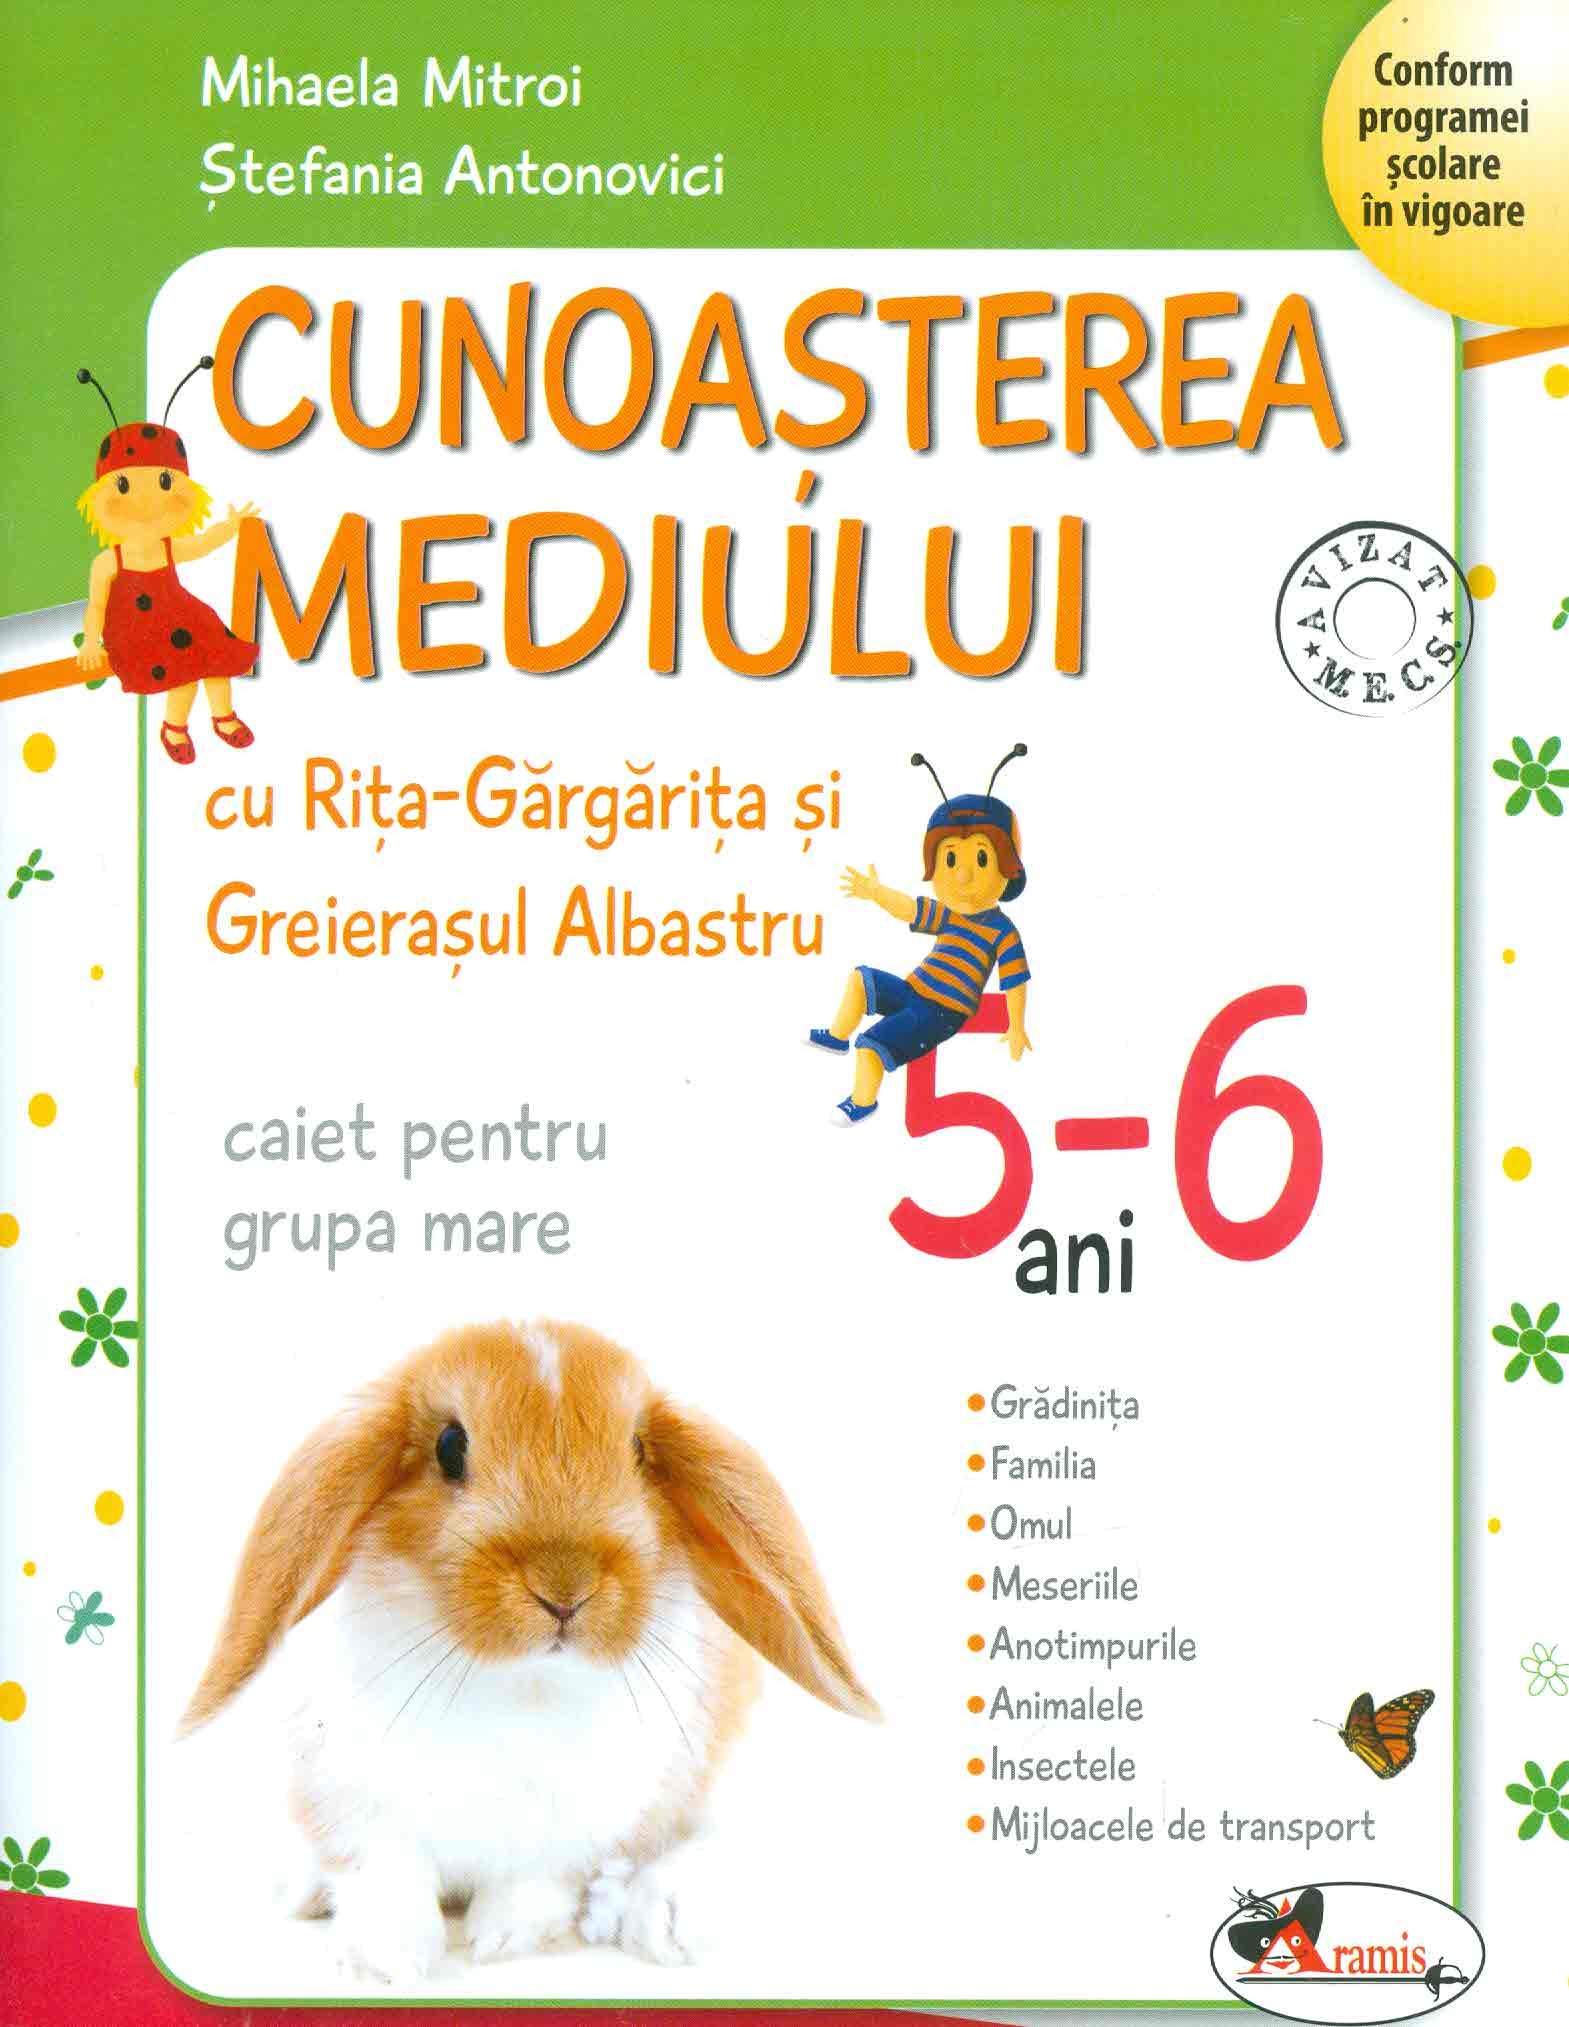 Cunoasterea mediului cu Rita-Gargarita si Greierasul Albastru. Caiet pentru grupa mare, 5-6 ani | Mihaela Mitroi, Stefania Antonovici